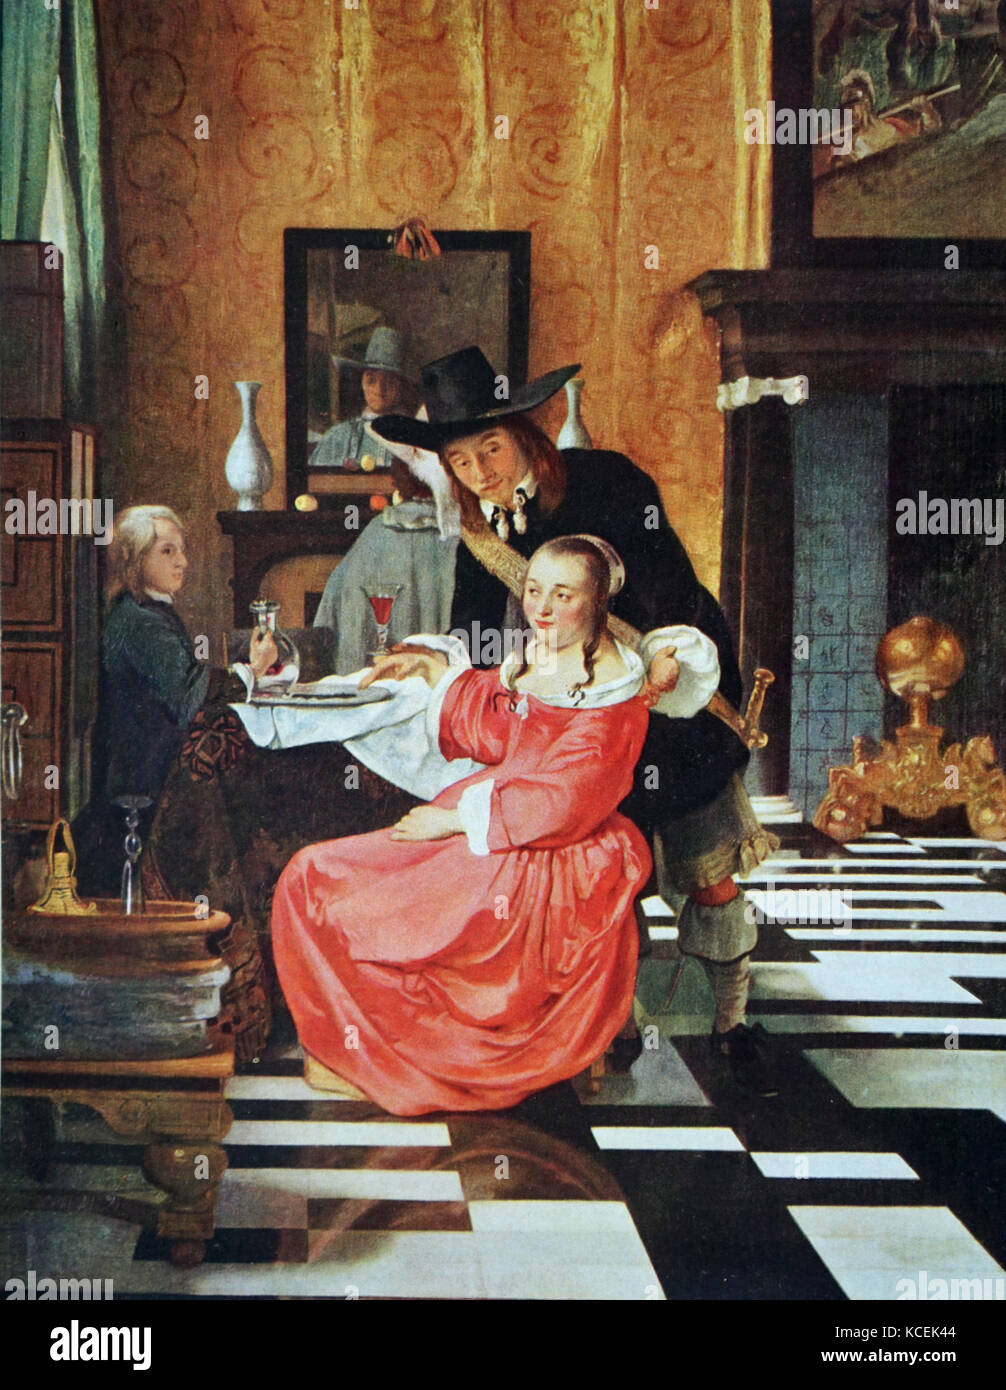 Gemälde mit dem Titel "die Verweigerung der Glas' von Hendrick van der  Burgh (1627-1664) eine niederländische Golden Age genre Maler. Vom 17.  Jahrhundert Stockfotografie - Alamy